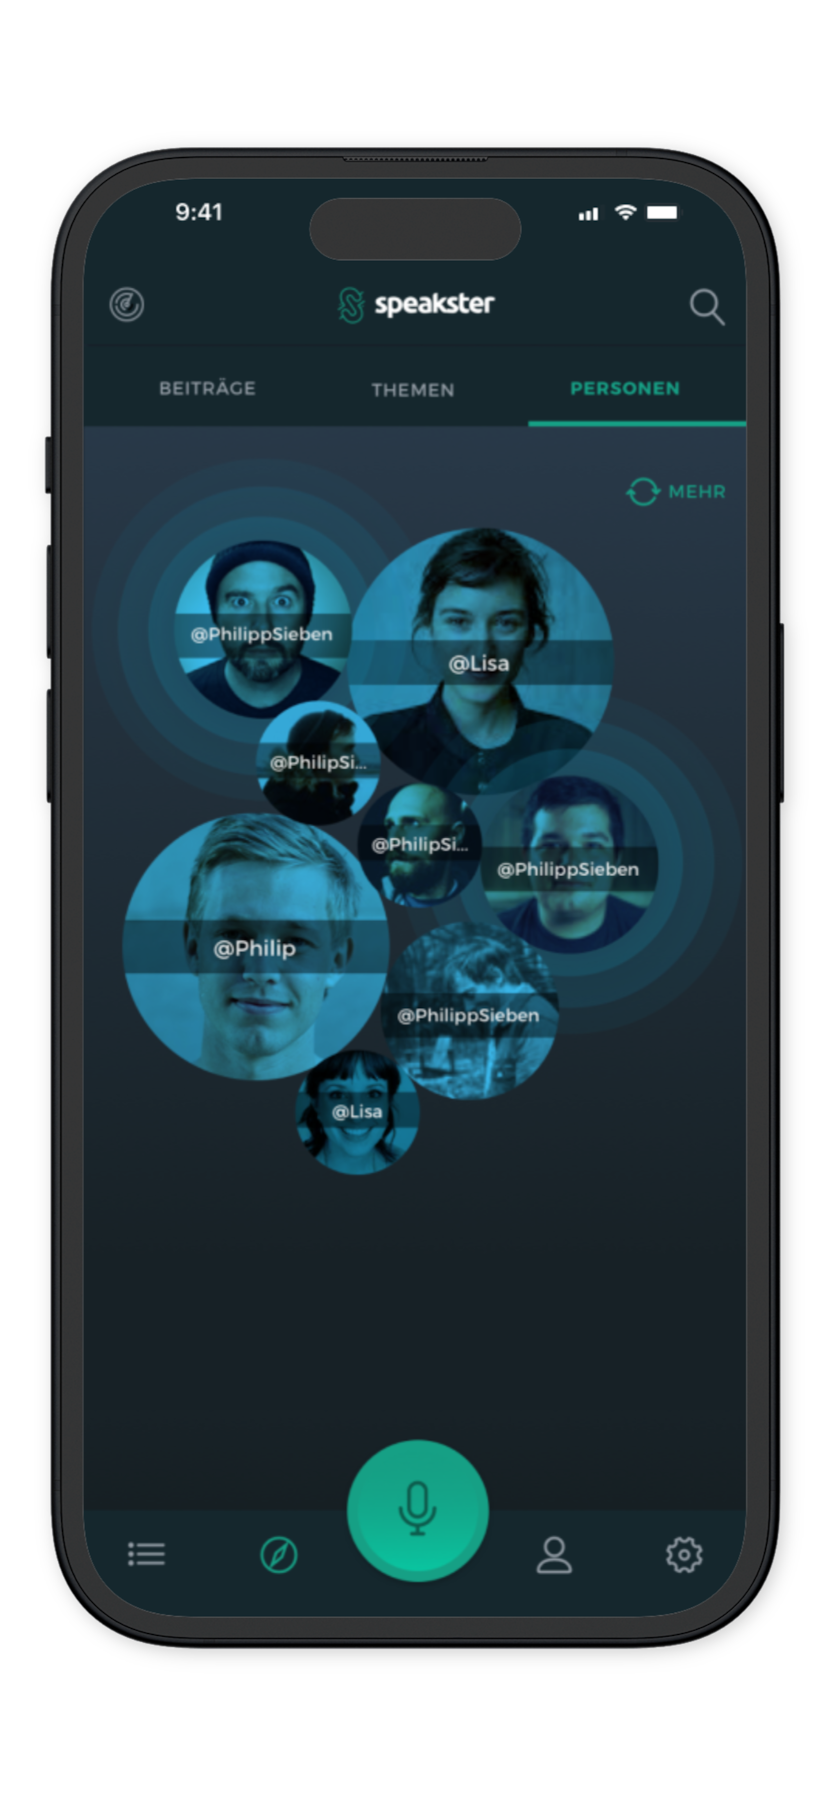 Speakster App Design: Personen Ansicht